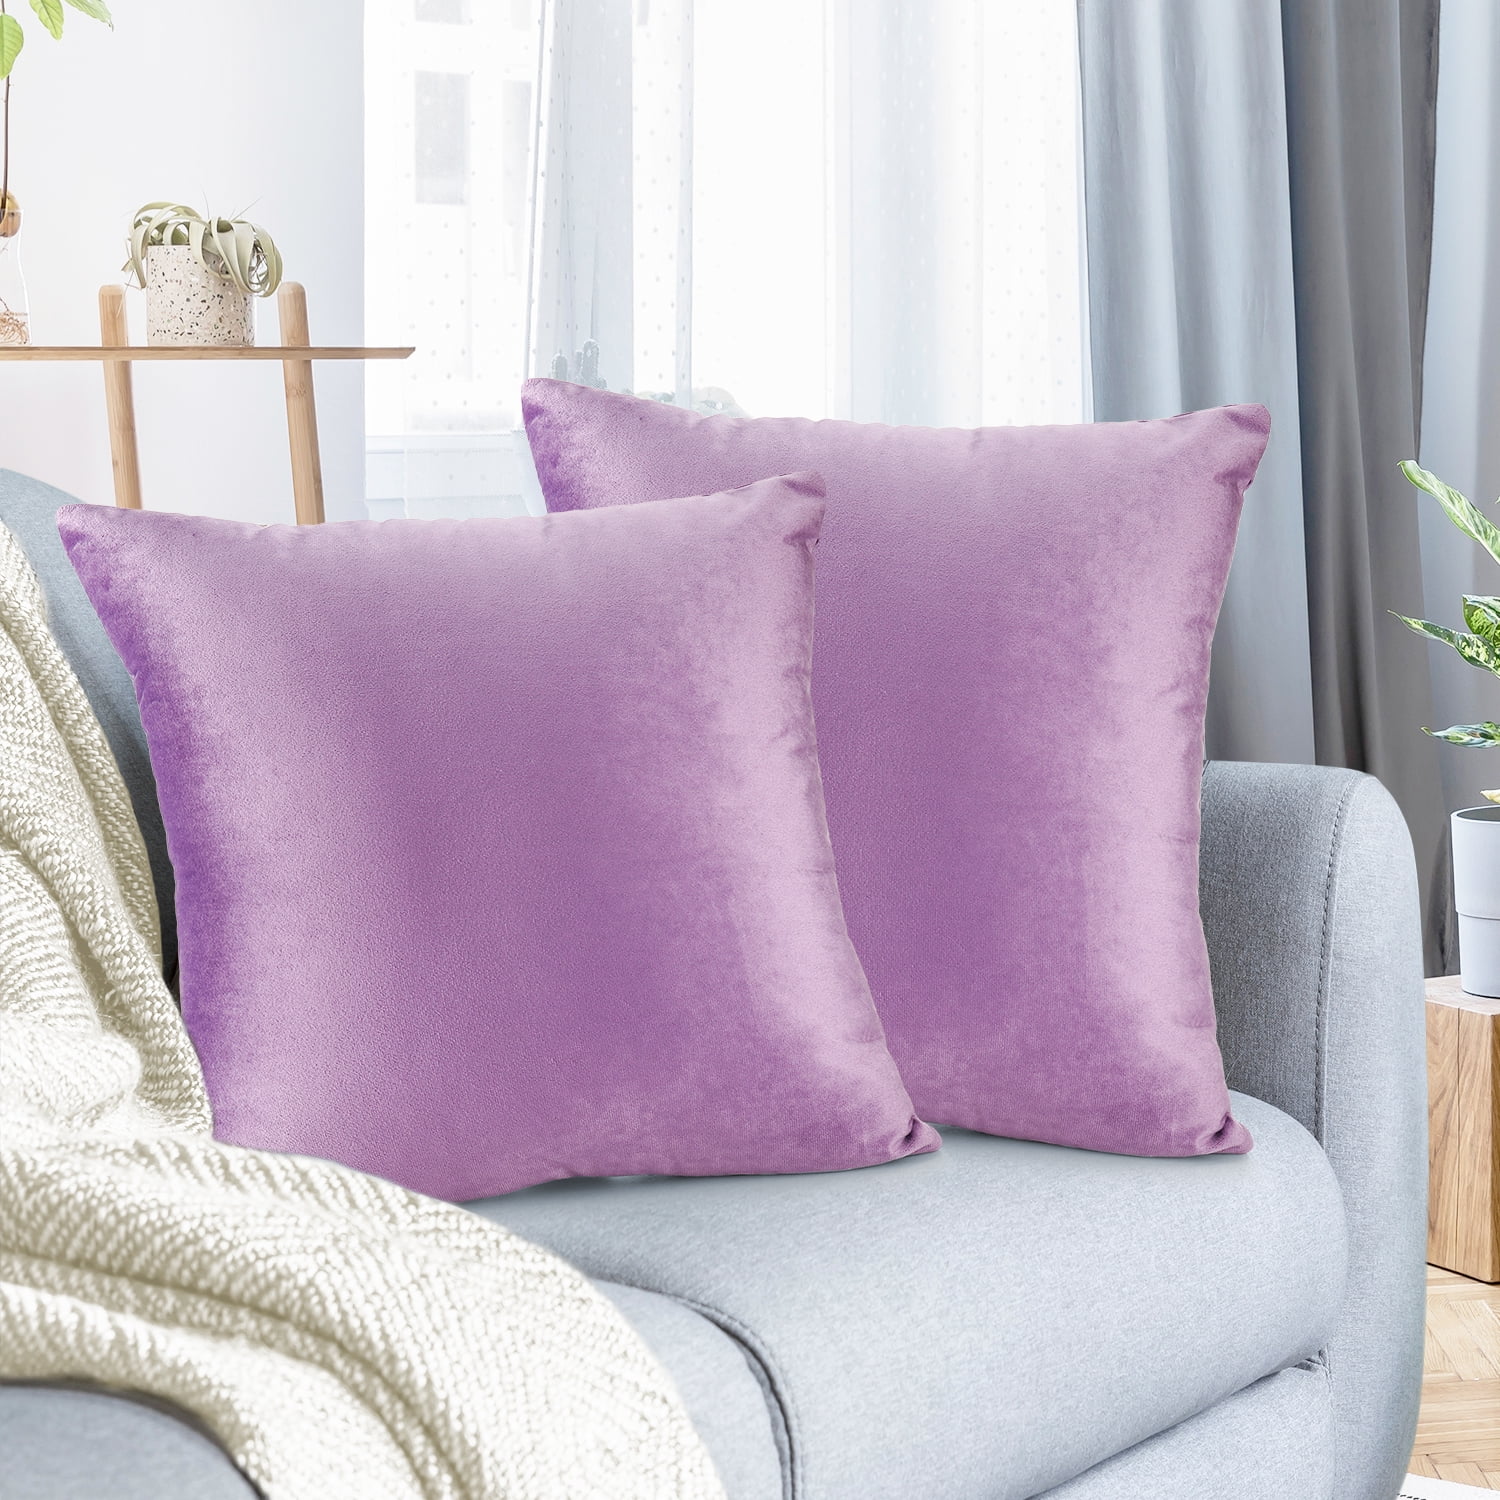 Hot 18" Lavender Linen Cotton Throw Pillow Case Cushion Cover Home Sofa Decor 